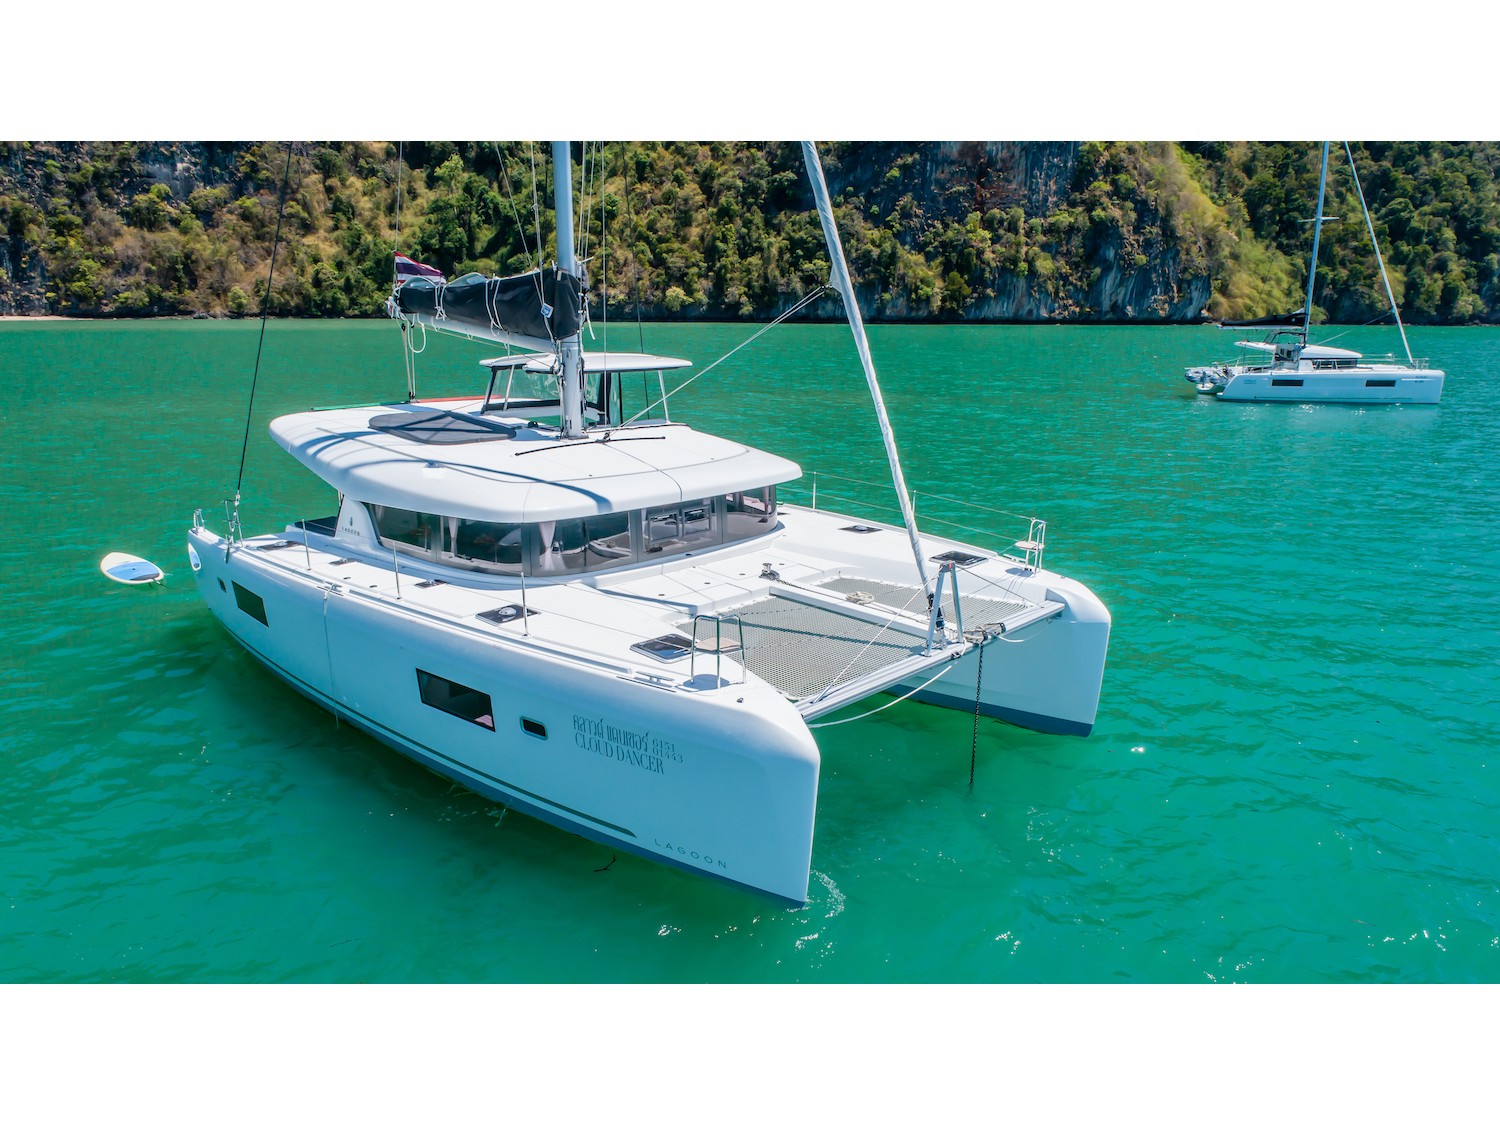 Lagoon 42 - Yacht Charter Thailand & Boat hire in Thailand Phuket Ao Po Grand Marina 2